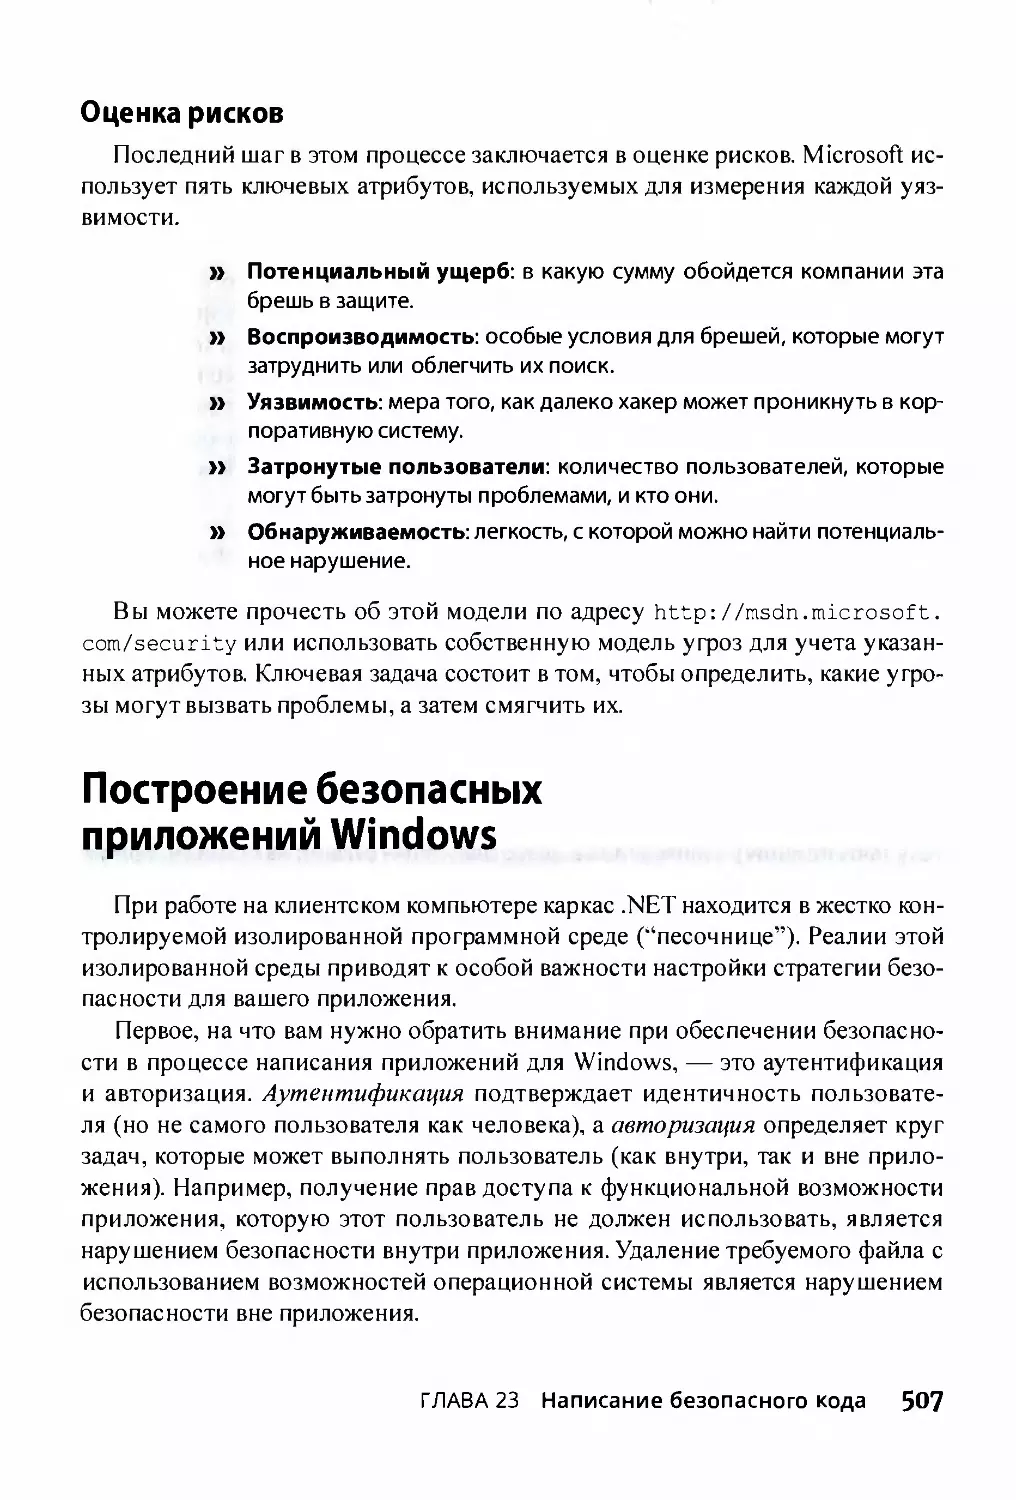 ﻿Оценка рисков
﻿Построение безопасных приложений Windows